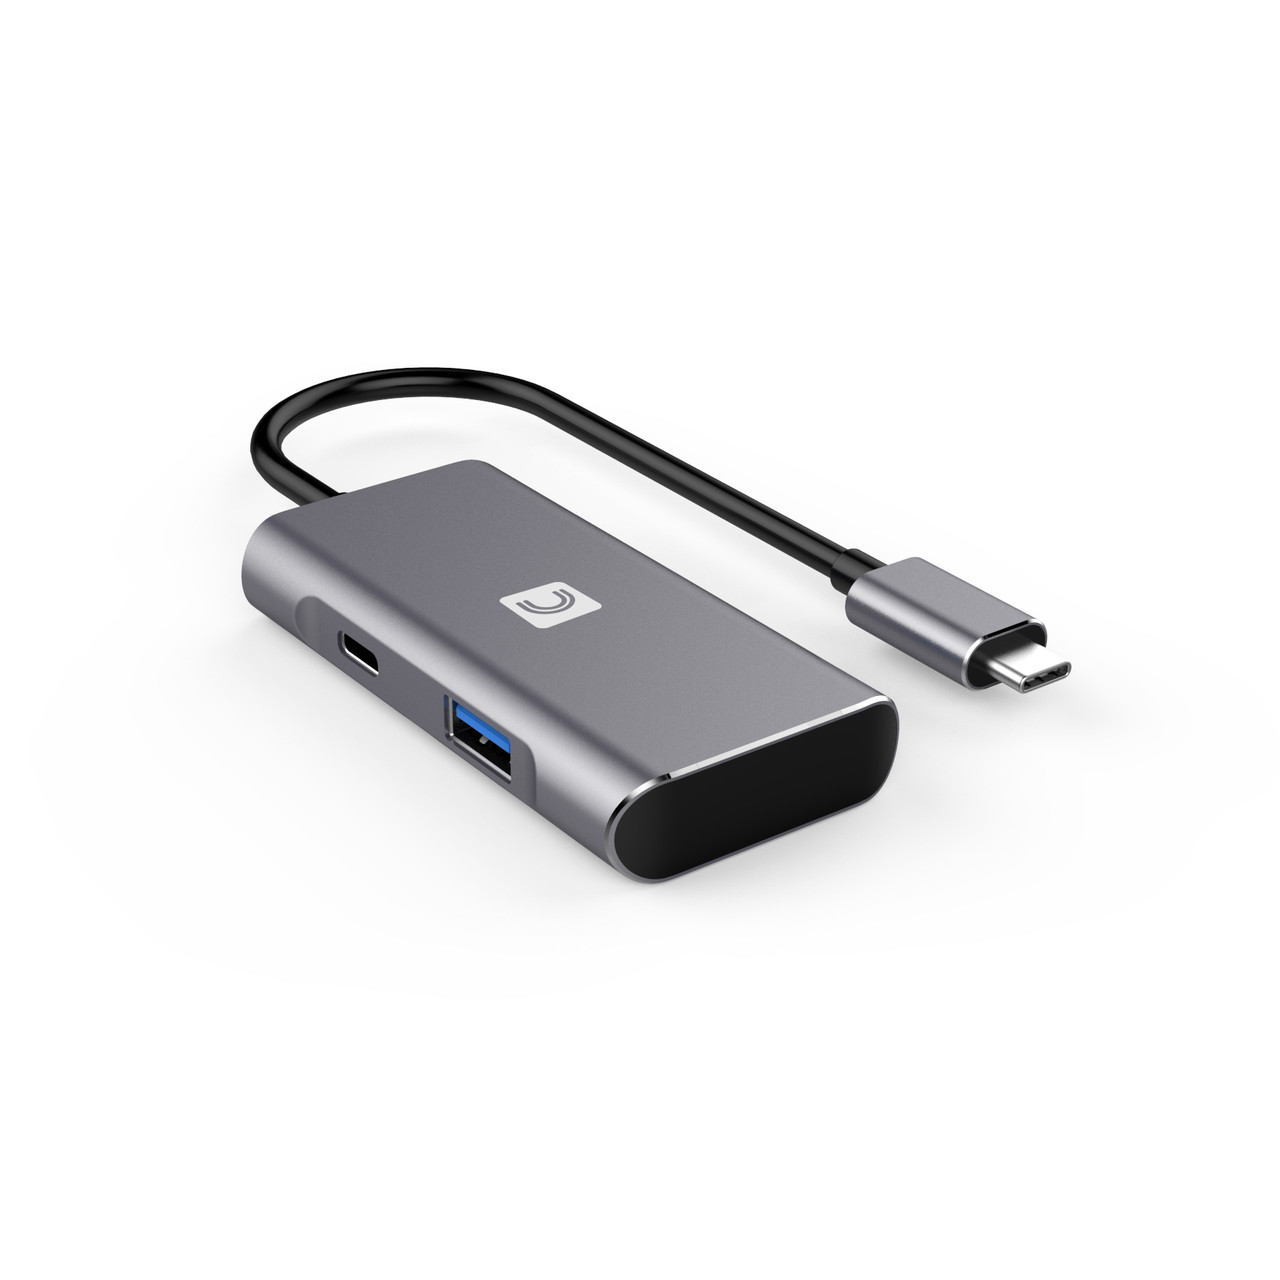  Aceele 𝟏𝟎𝐆𝐛𝐩𝐬 USB C Hub with 4 USB A 3.2 Ports